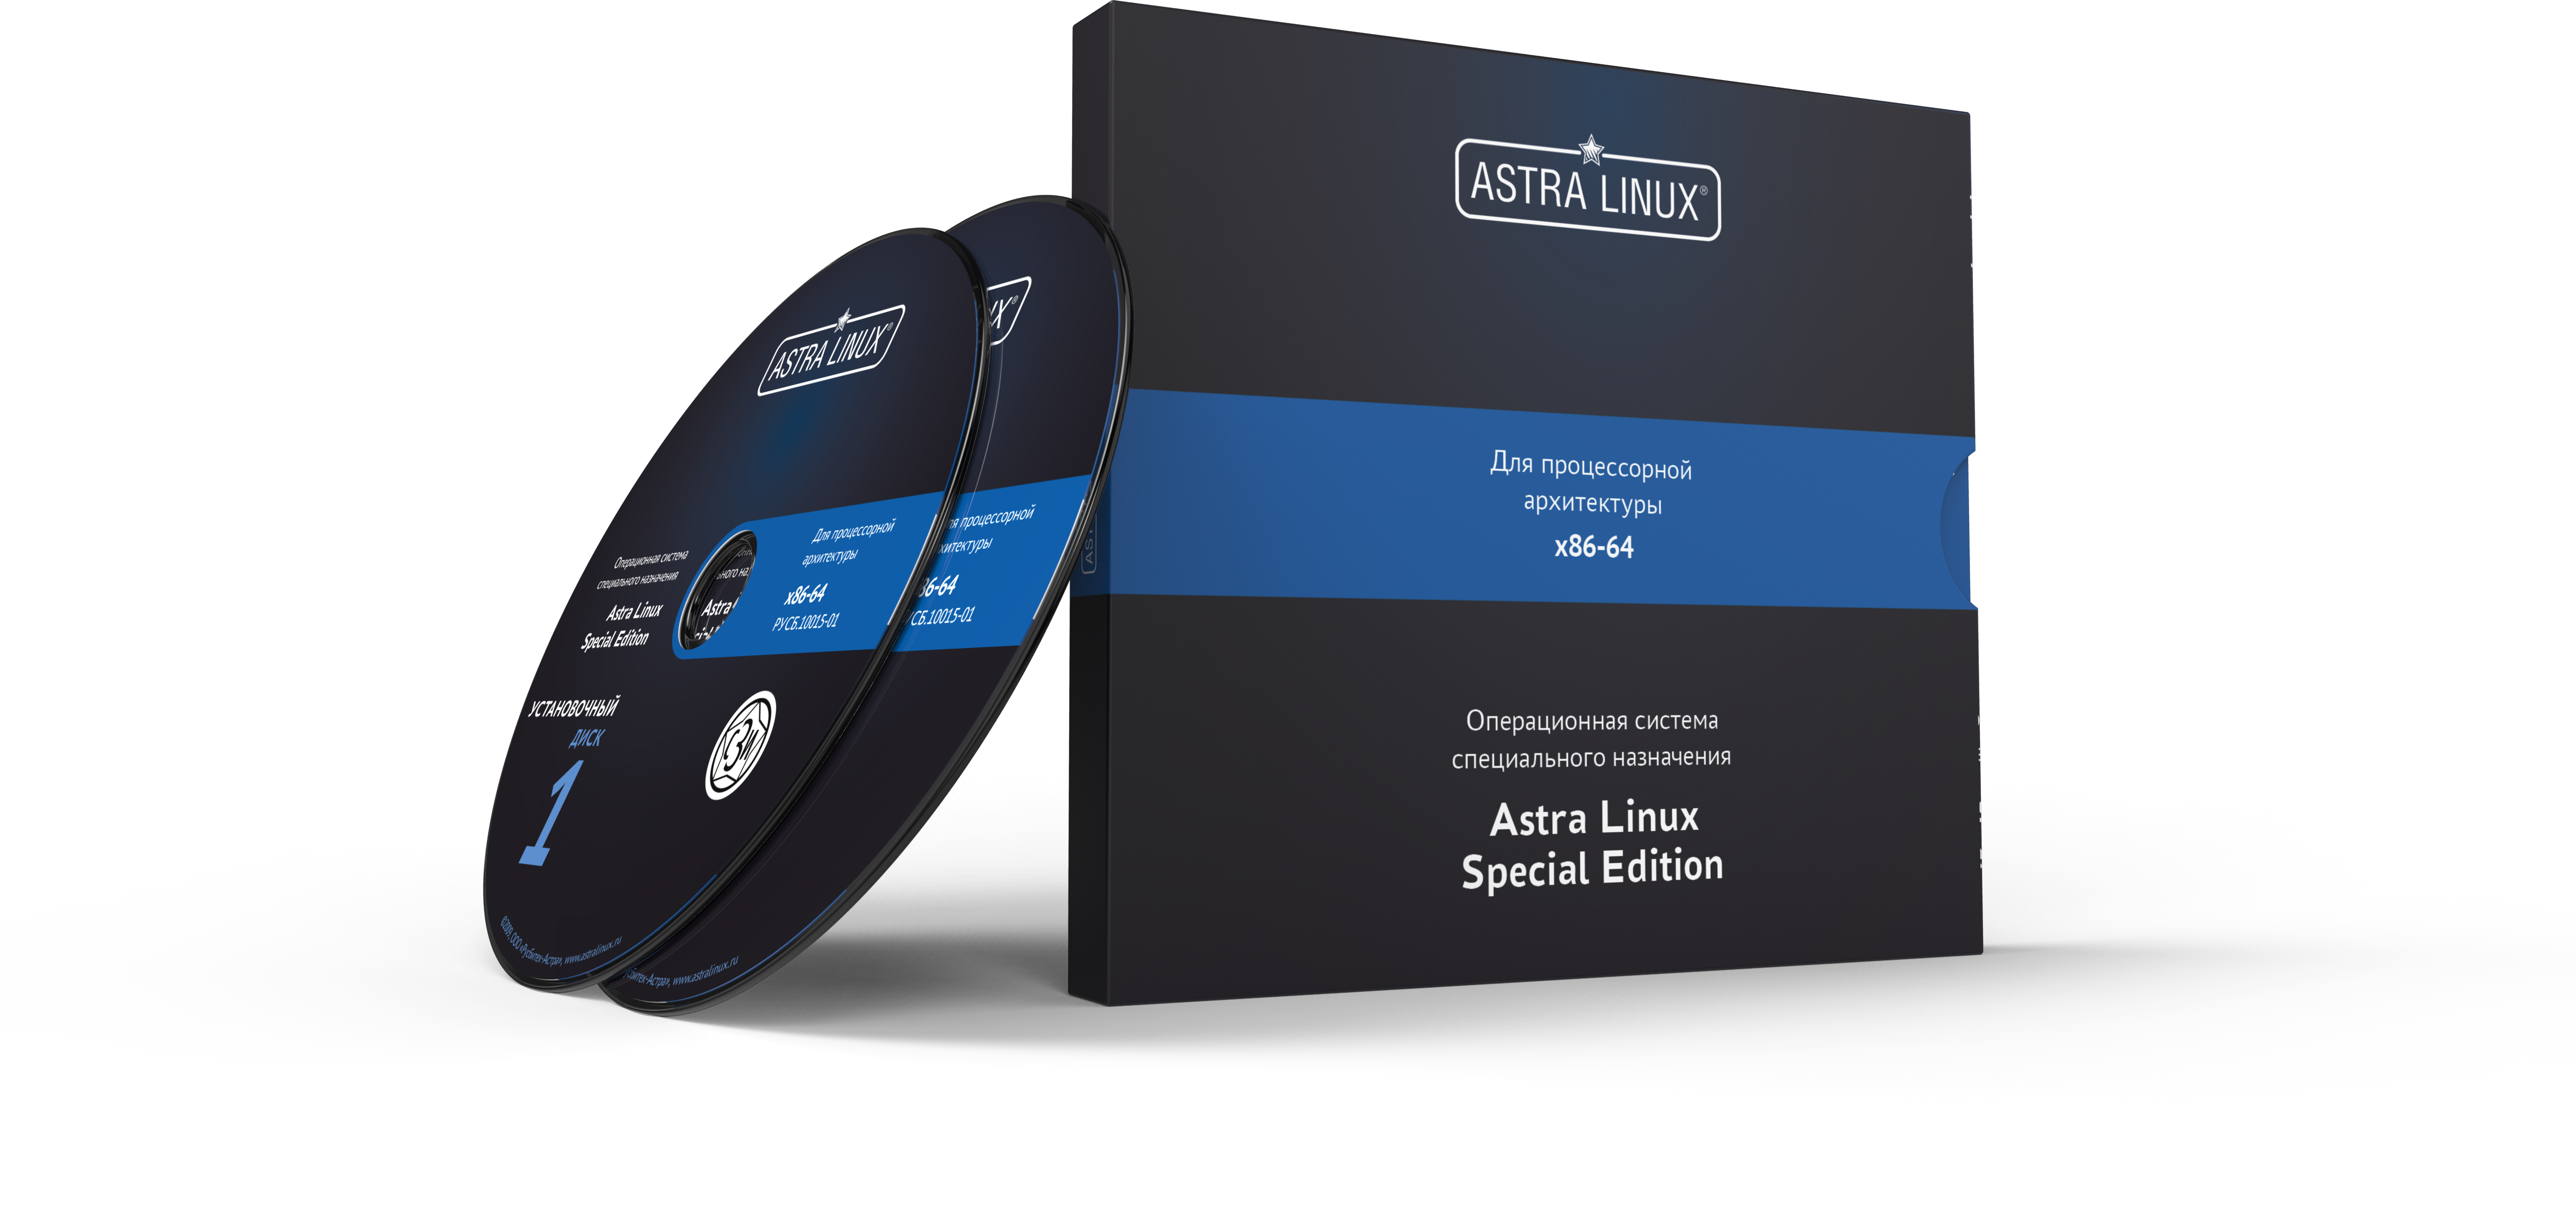 Astra Linux Special Edition 1.7 - Воронеж, "Усиленный", диск, ФСТЭК, на 36 мес., ТП "Привилегированная" на 36 мес.